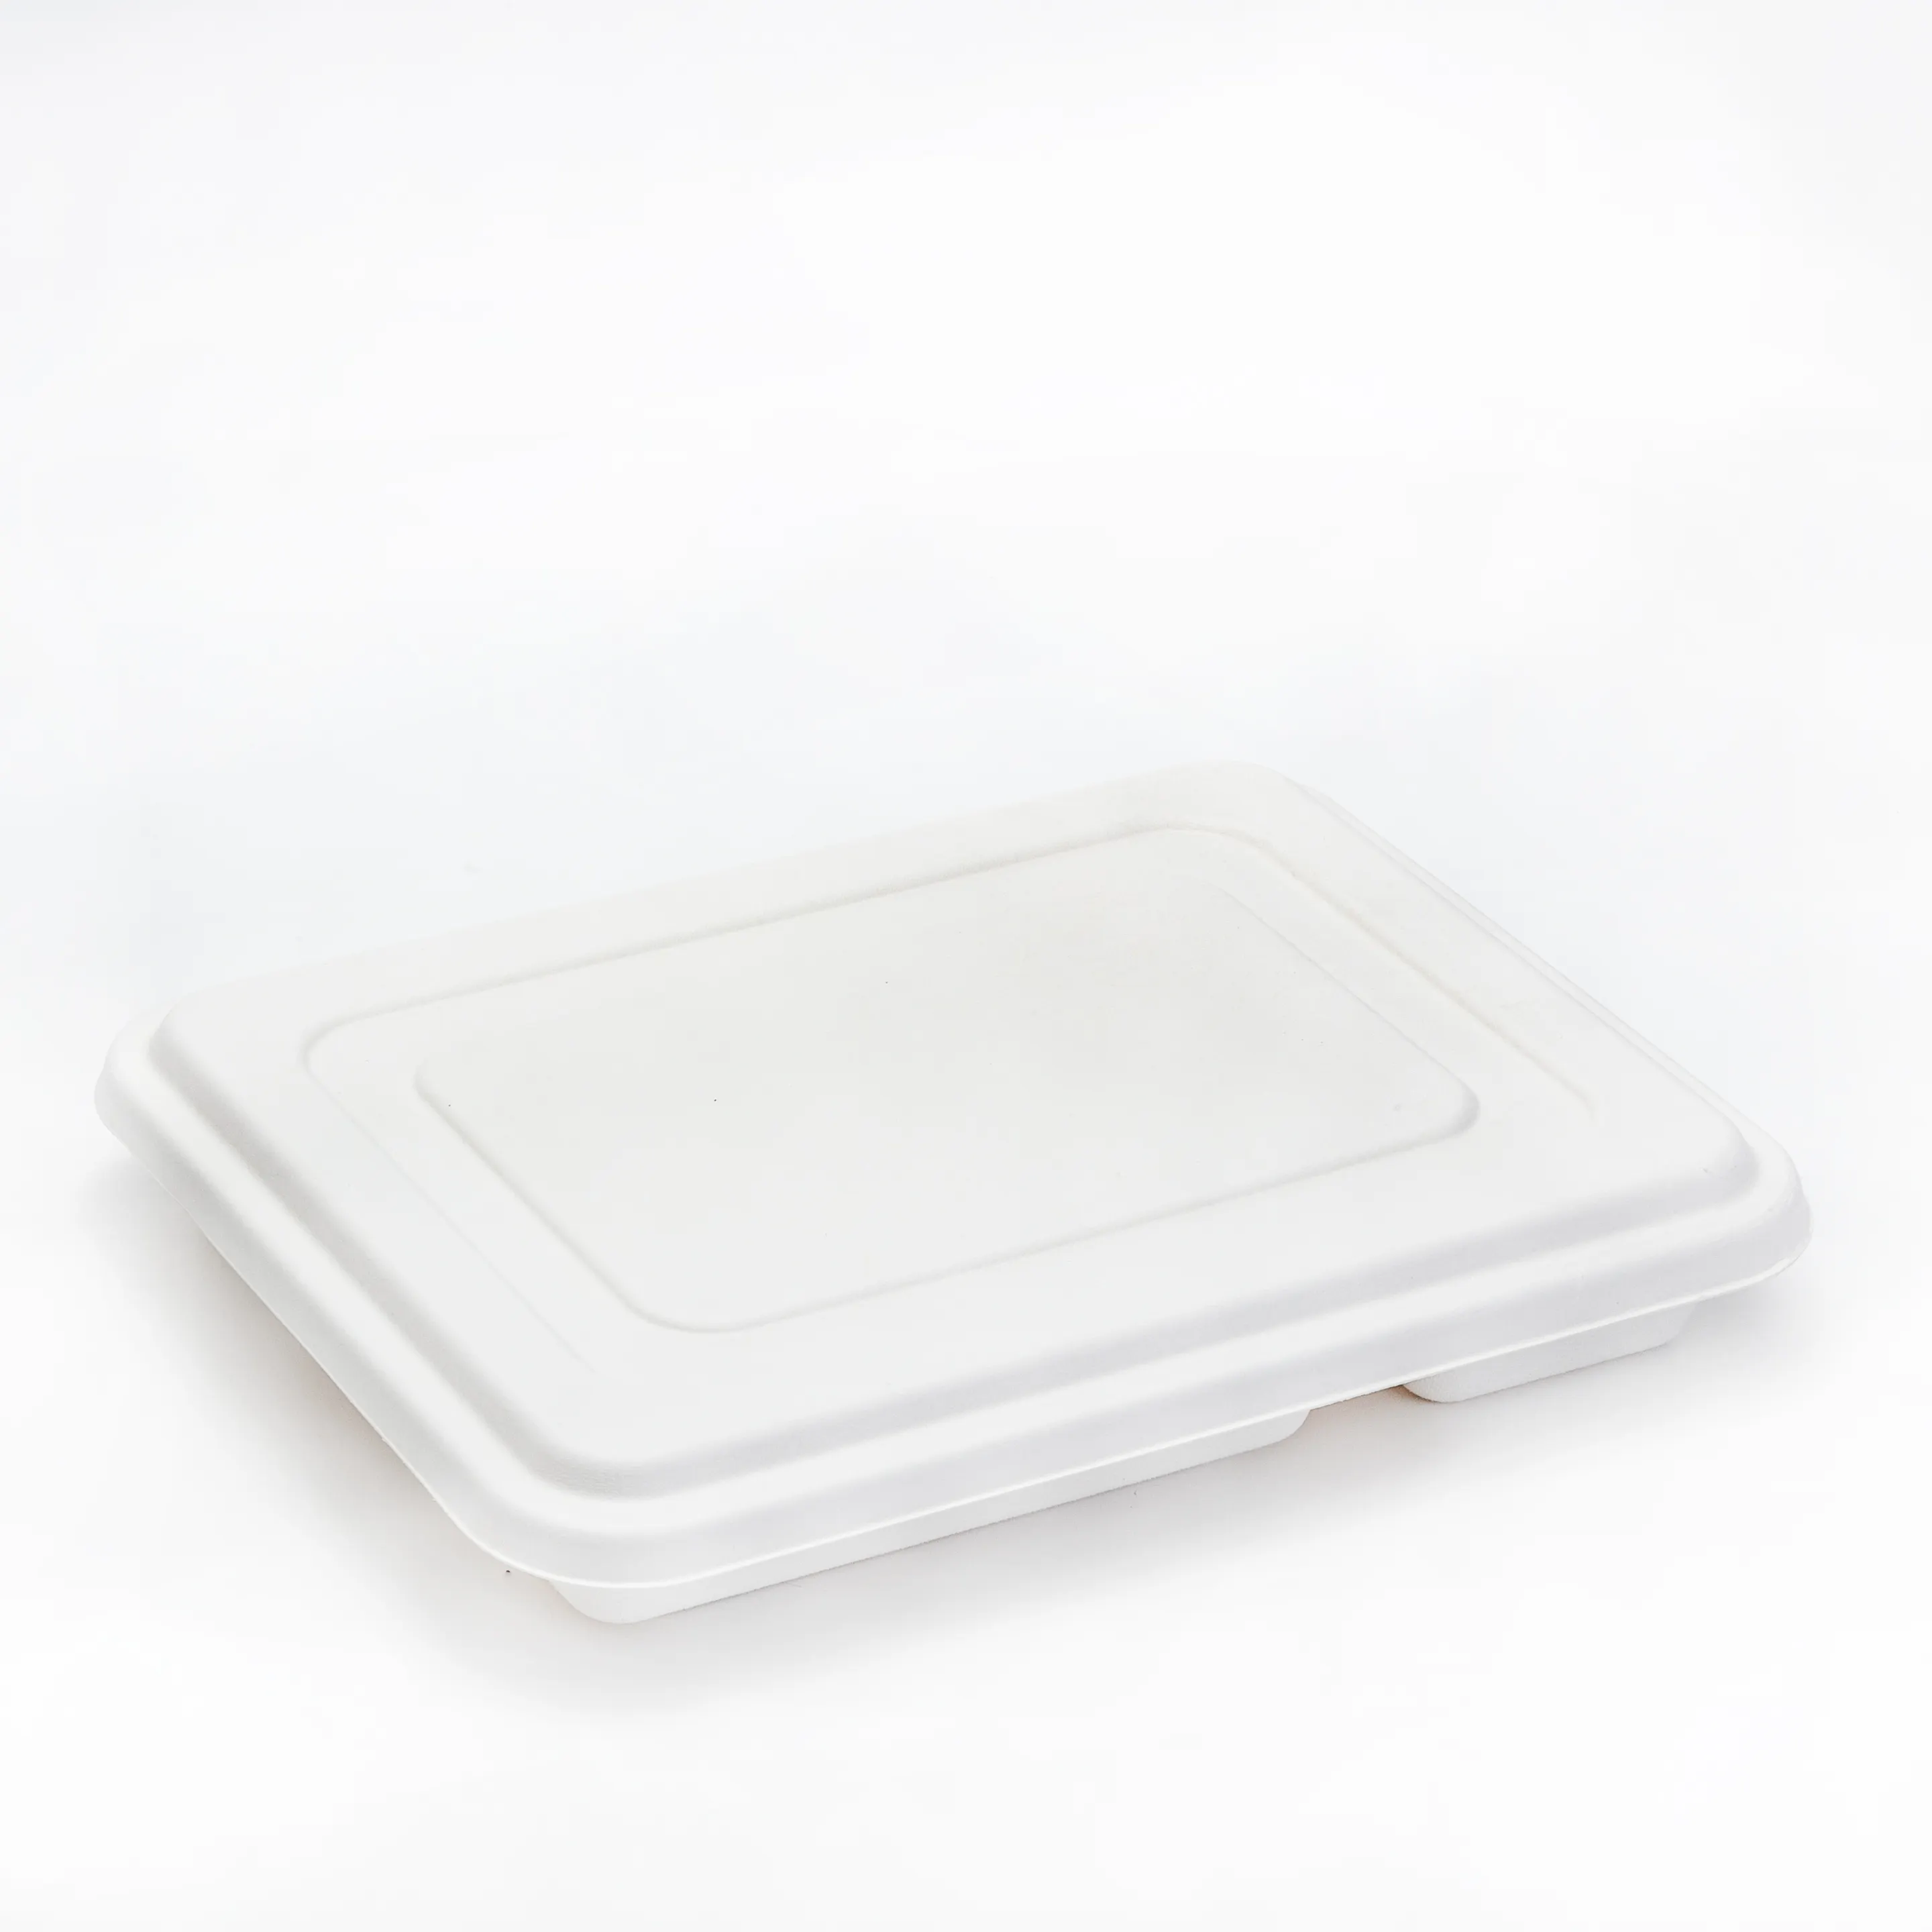 Kağıt tabaklar tek kullanımlık özel baskılı tek kullanımlık kağıt tabaklar plastik tabaklar tek kullanımlık parti